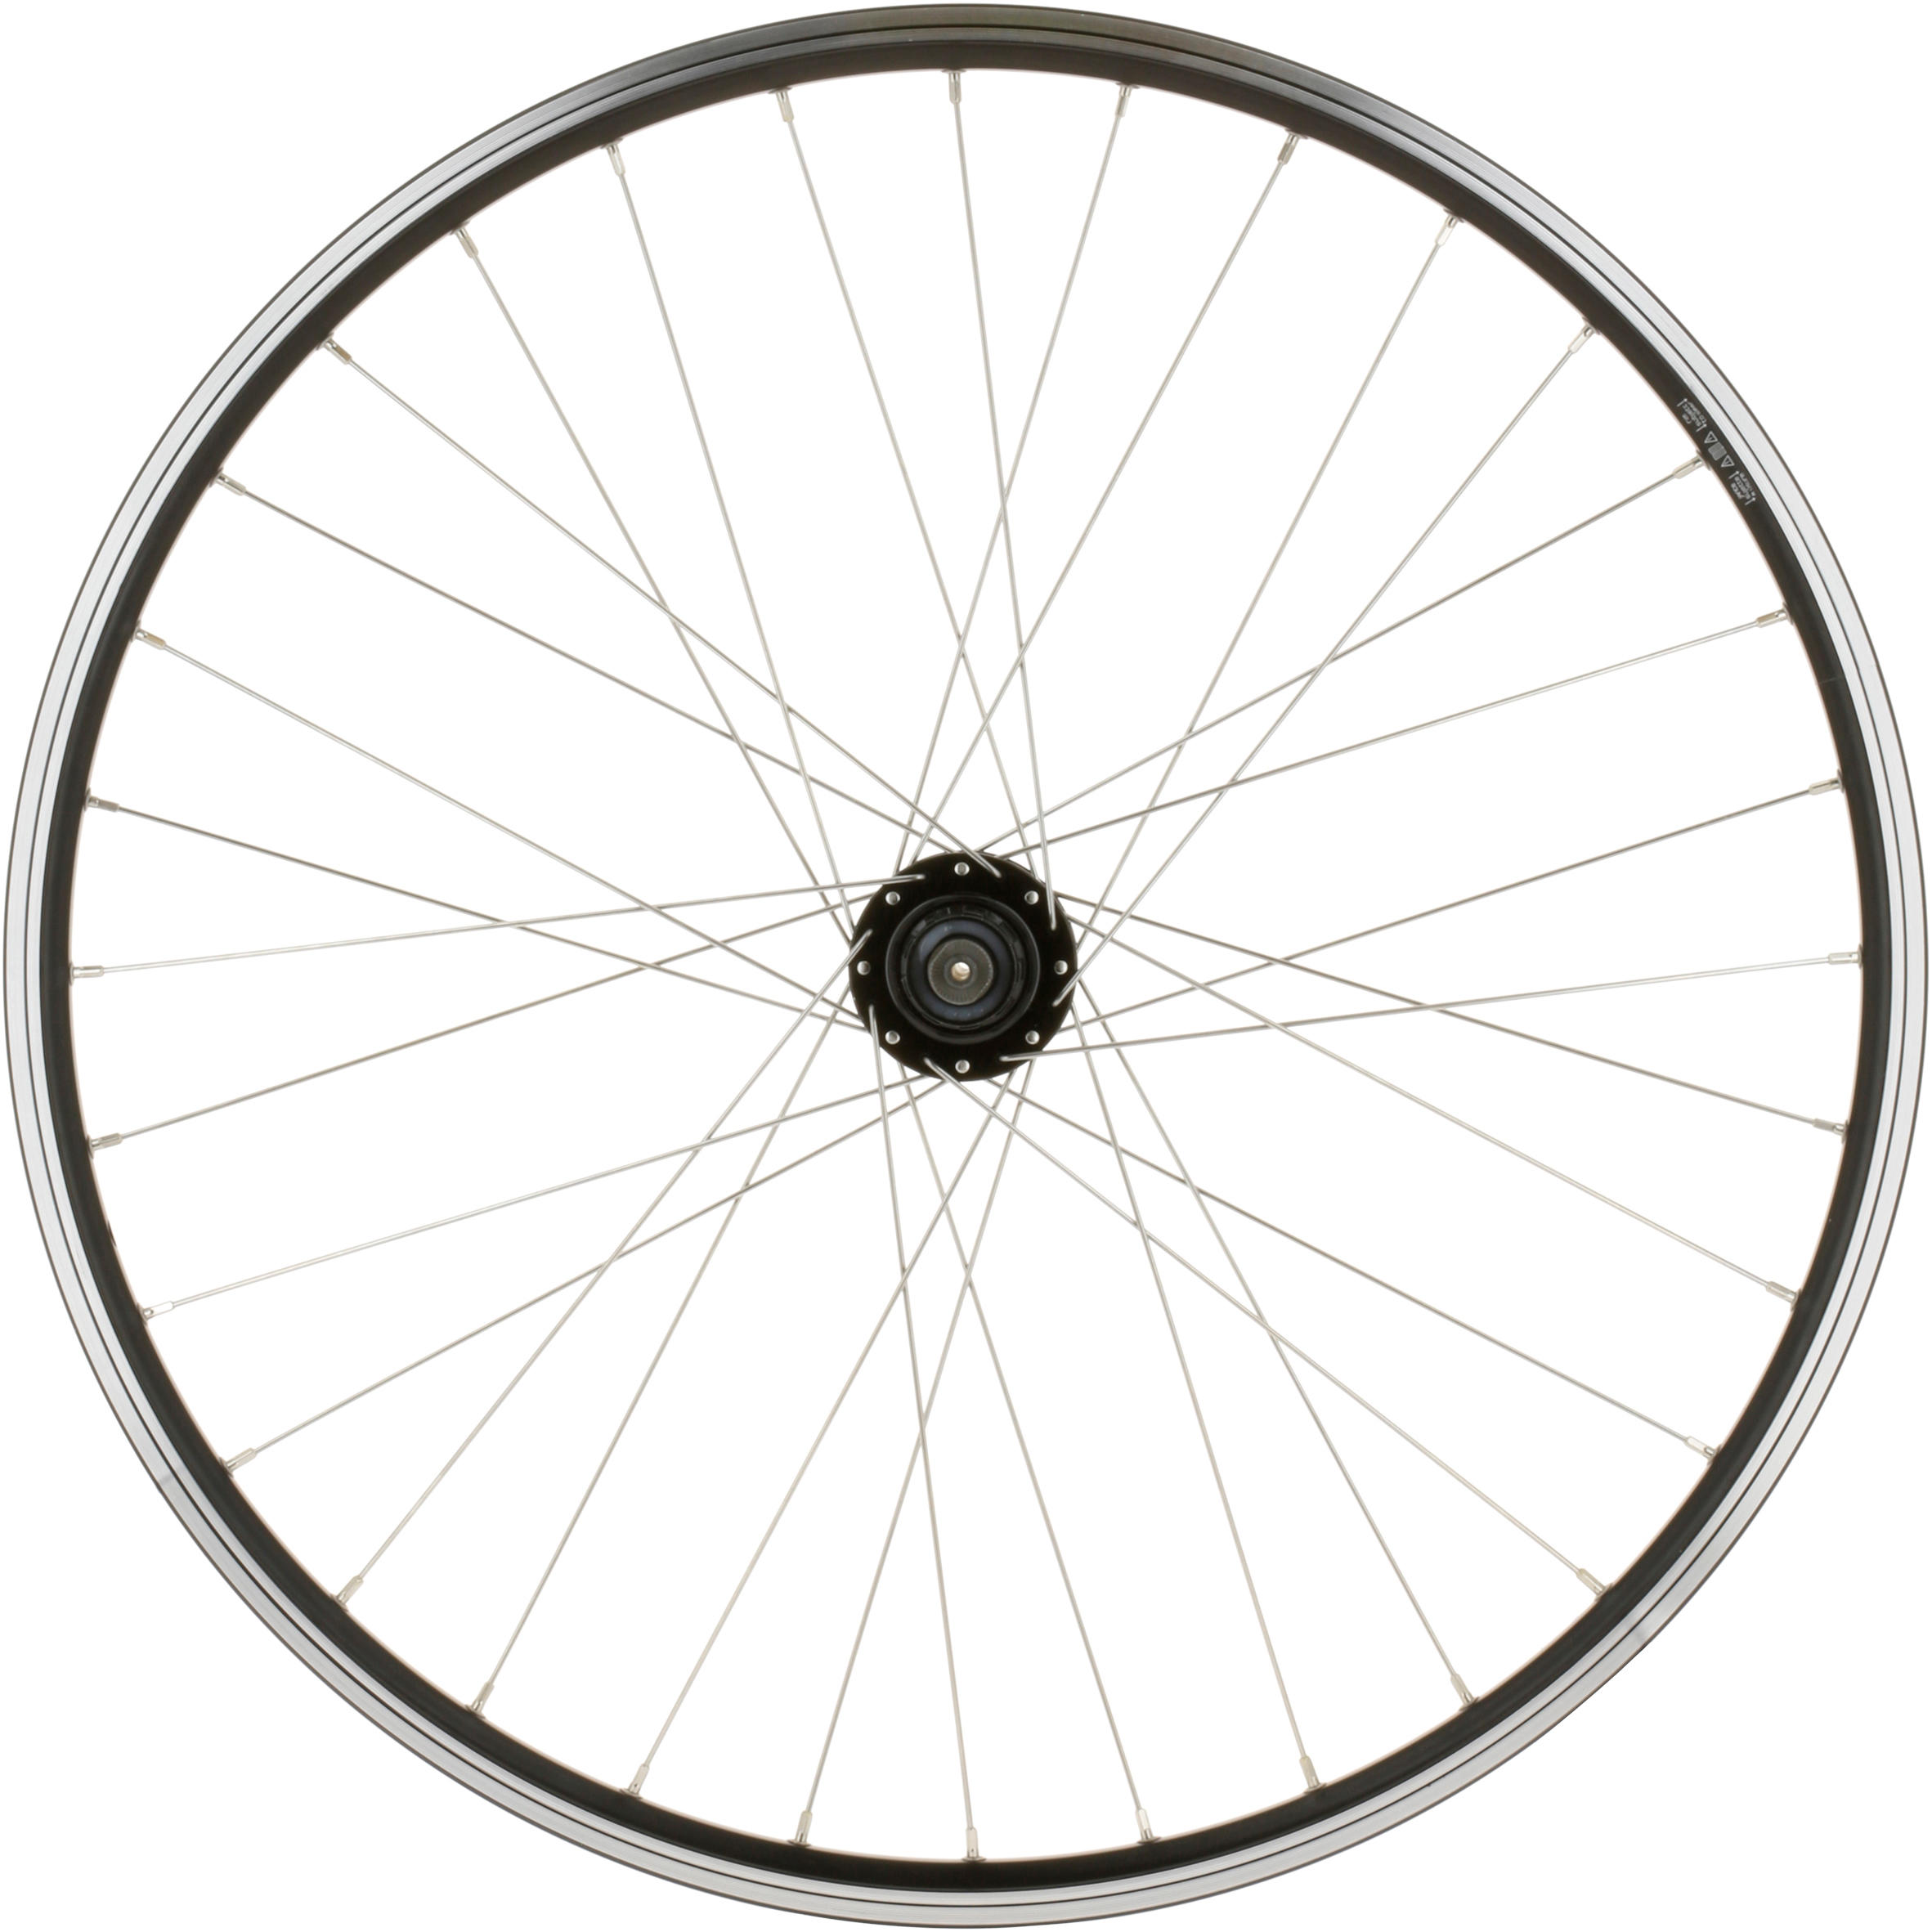 26 rear bike wheel